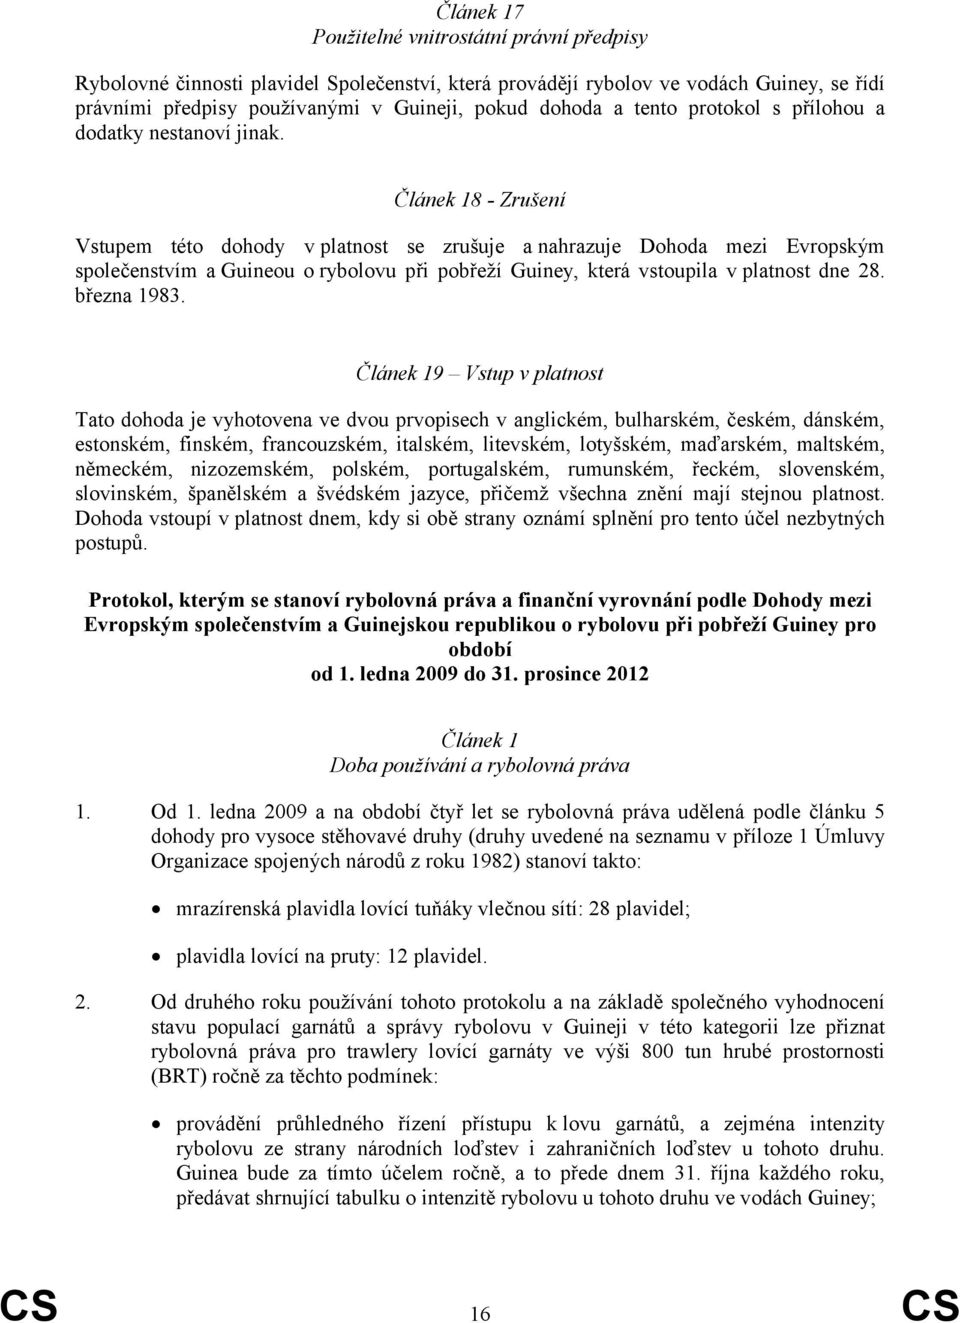 Článek 18 - Zrušení Vstupem této dohody v platnost se zrušuje a nahrazuje Dohoda mezi Evropským společenstvím a Guineou o rybolovu při pobřeží Guiney, která vstoupila v platnost dne 28. března 1983.